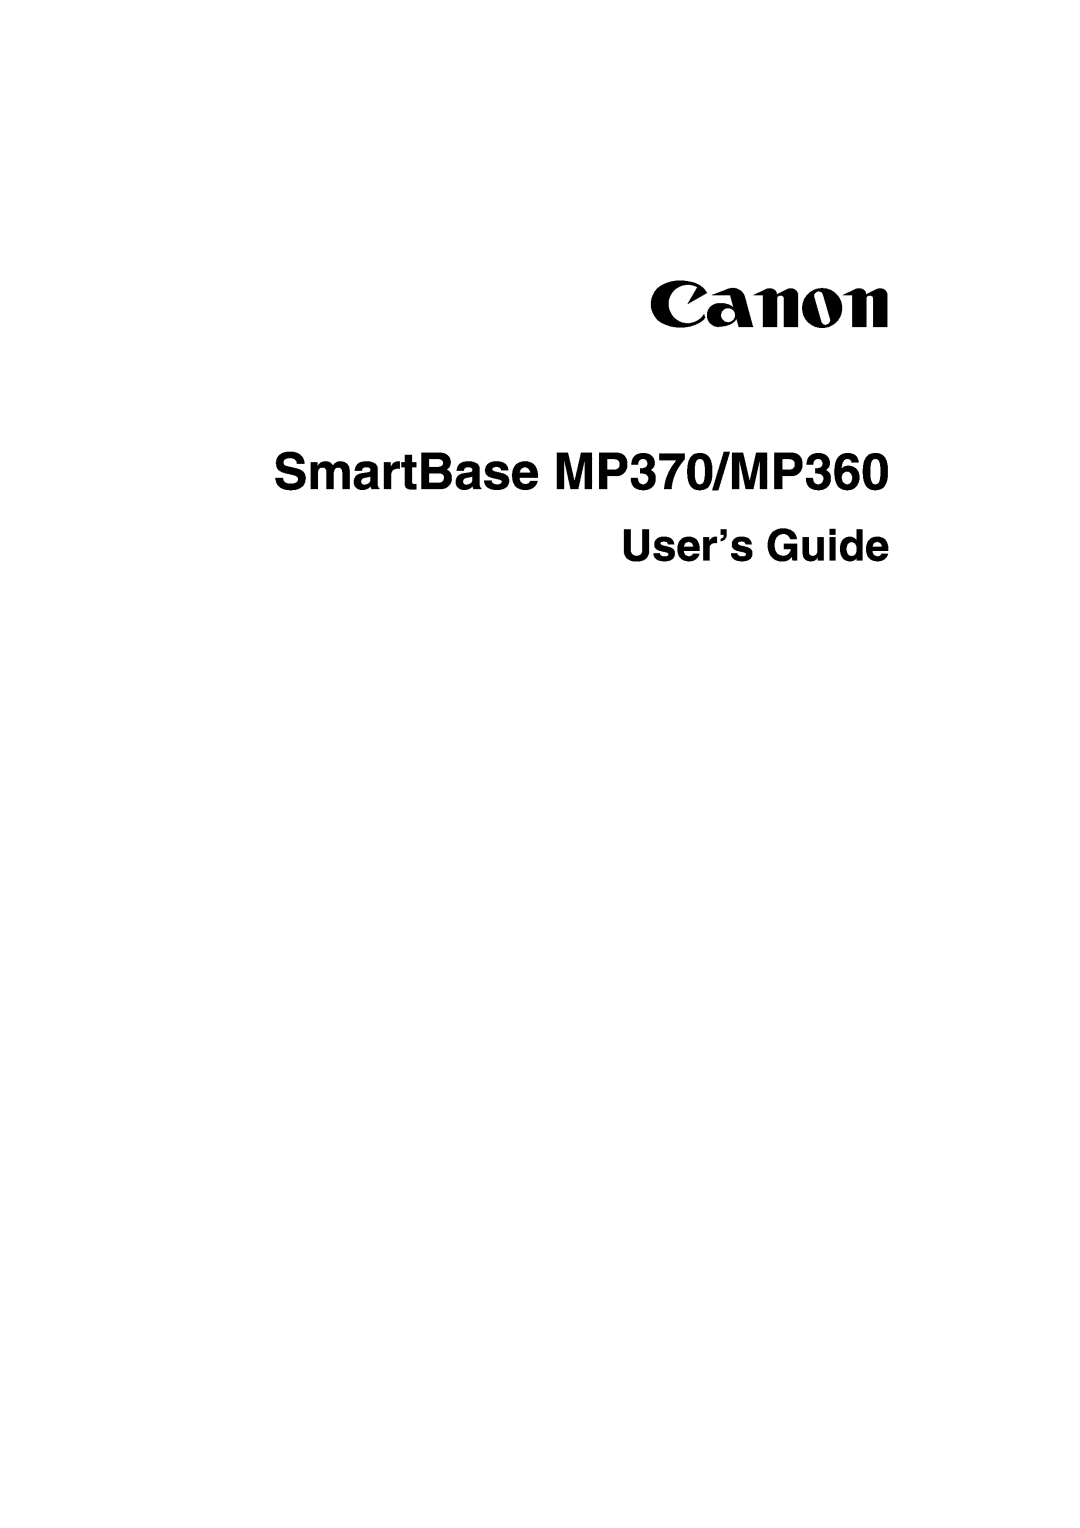 Canon manual SmartBase MP370/MP360, Canon, User’s Guide 